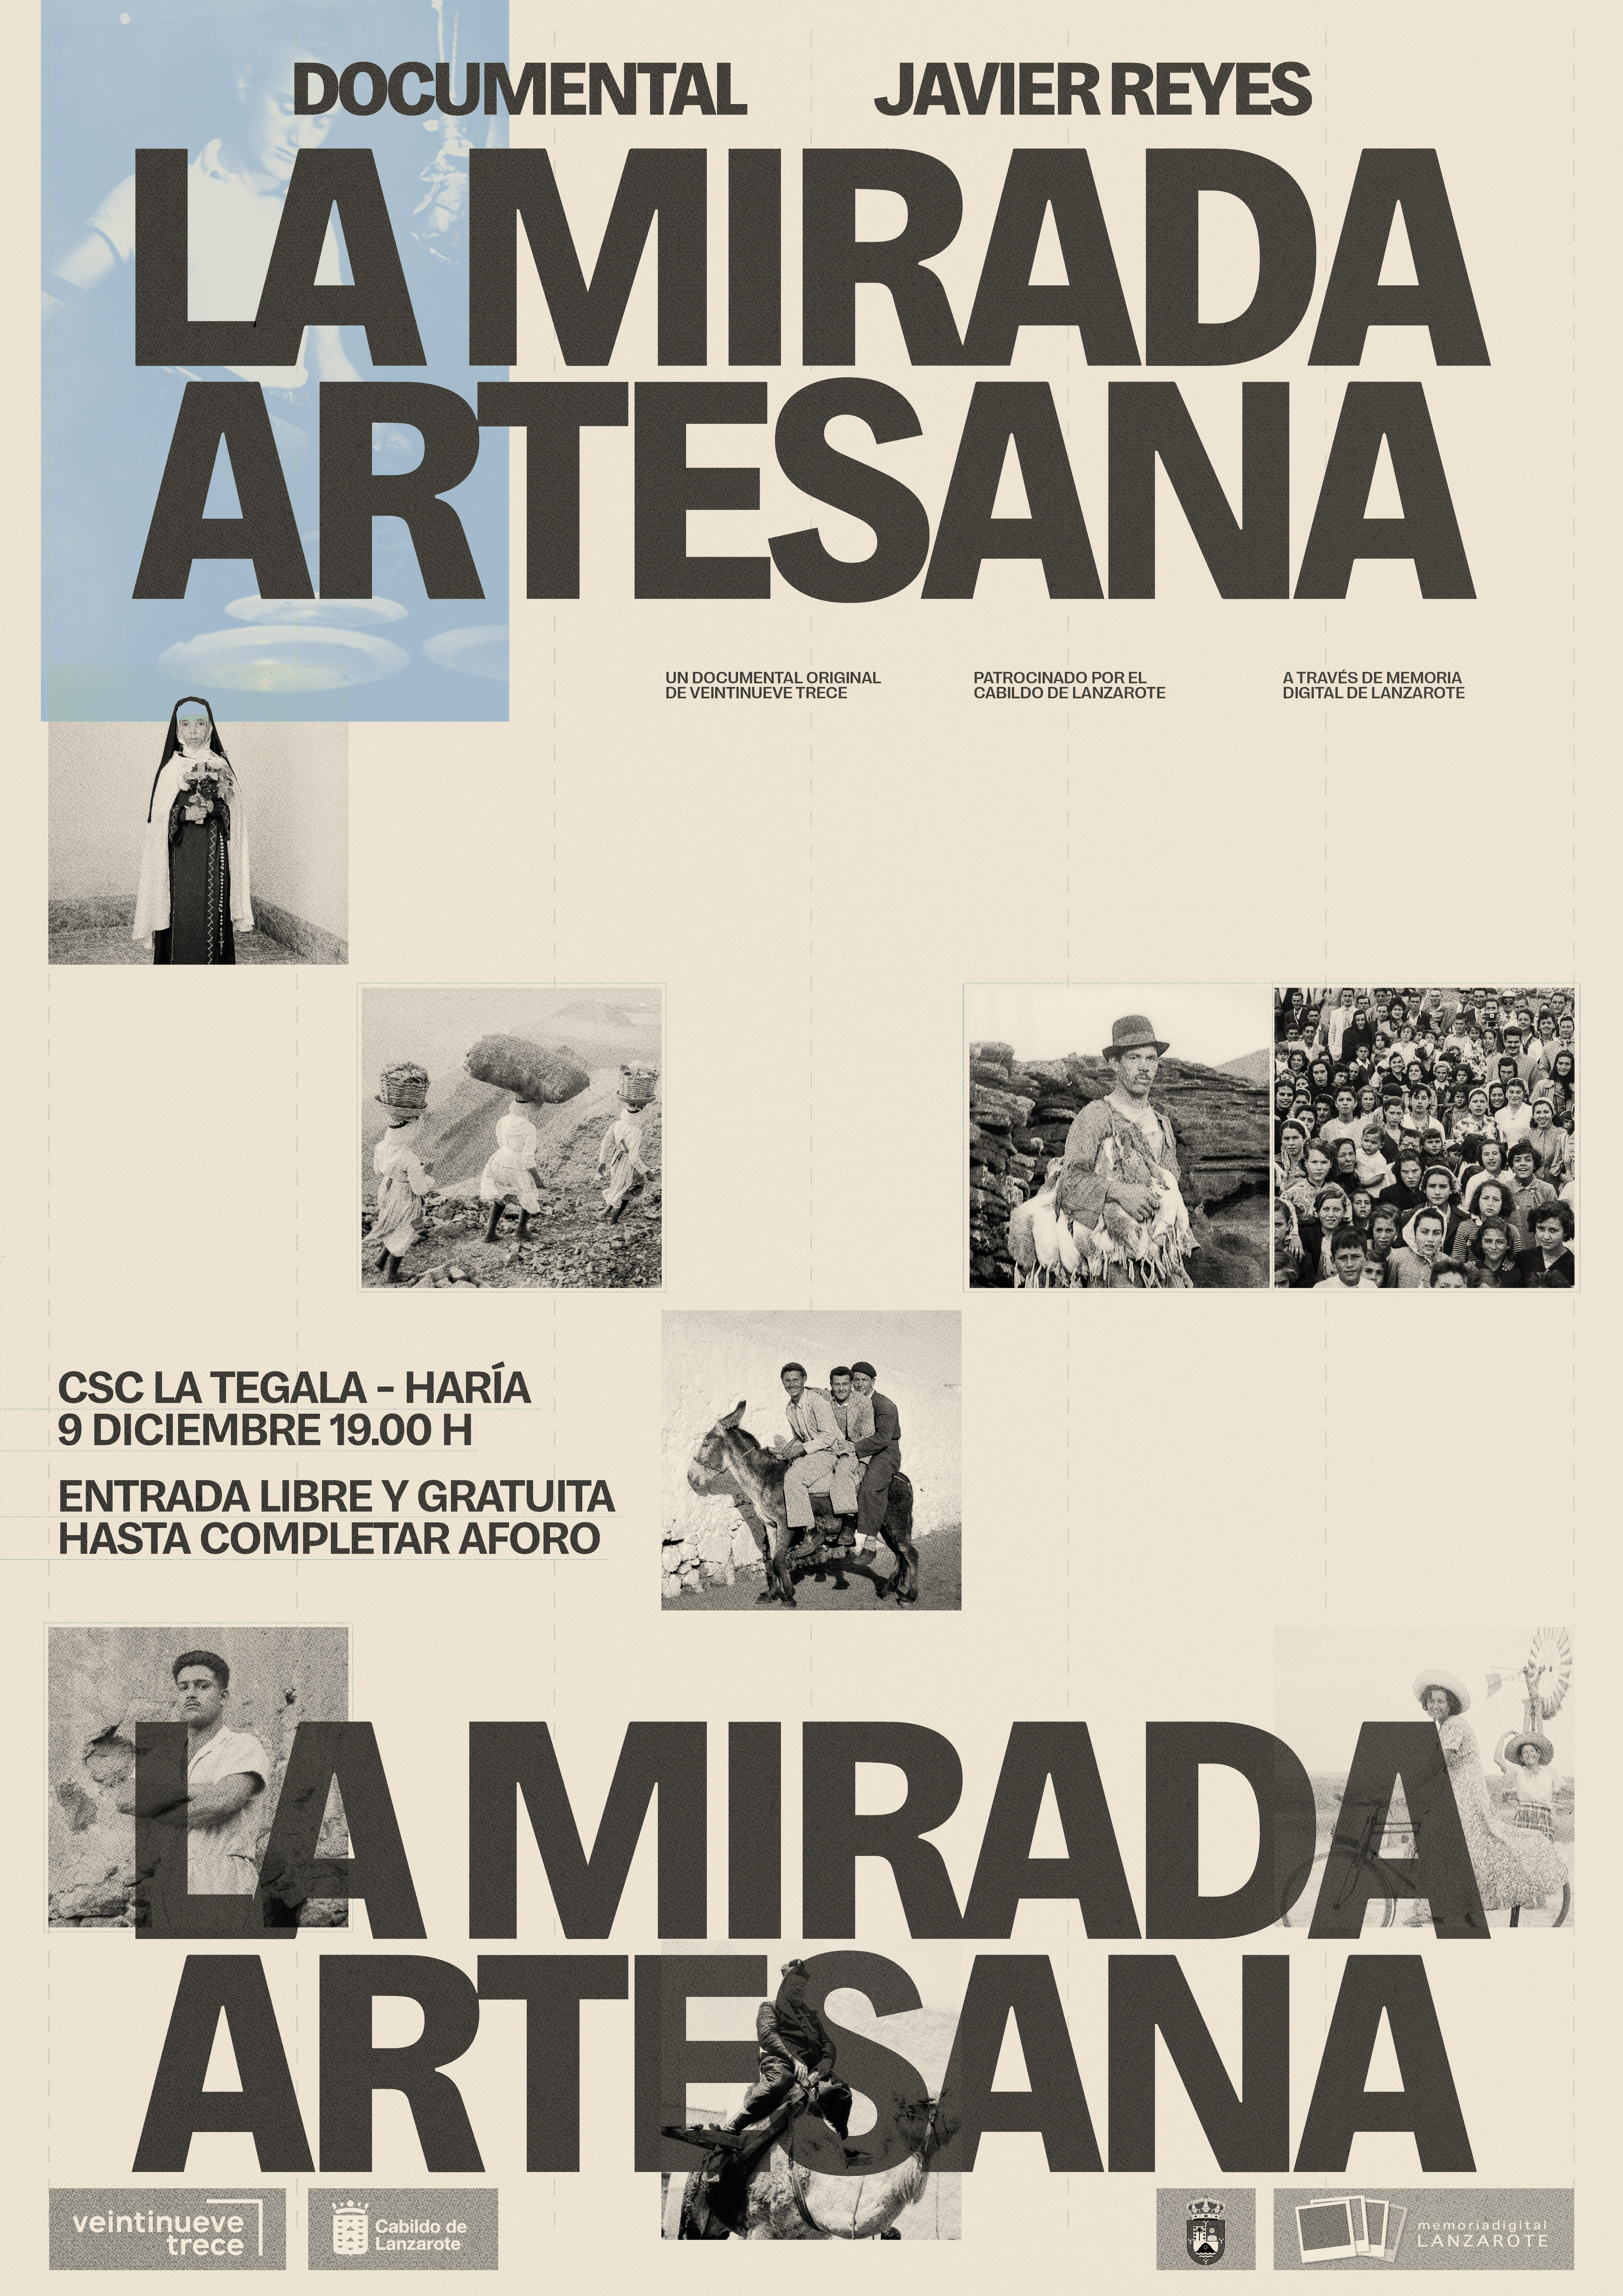 El Cabildo de Lanzarote presenta el documental “Javier Reyes: la mirada artesana”, un homenaje al veterano fotógrafo hariano